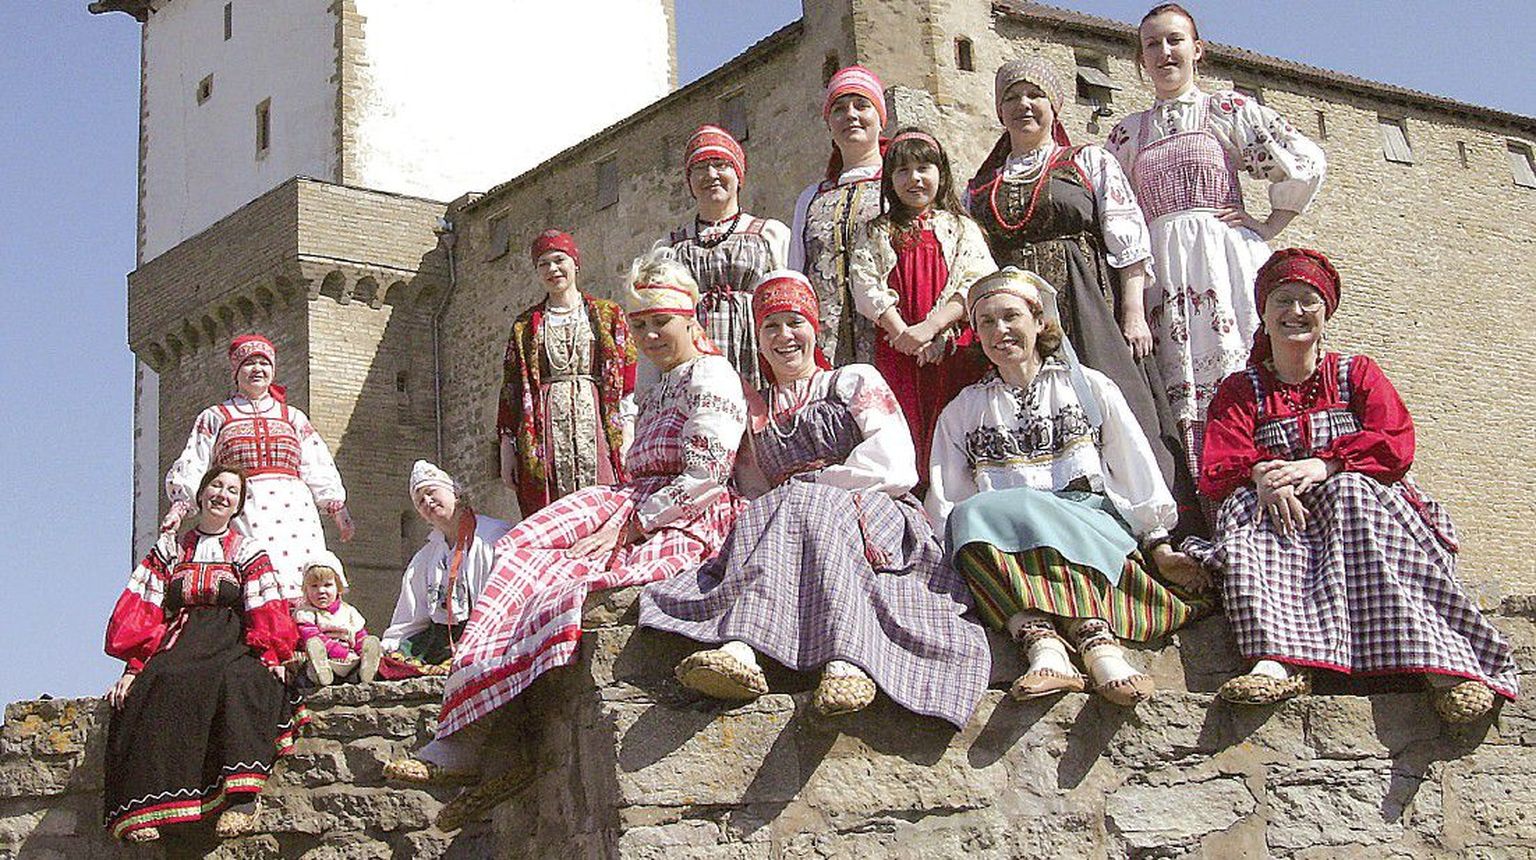 Фольклорный ансамбль Нарвского музея «Супрядки» называет свои выступления спектаклями-концертами: они не просто поют народные песни, но и показывают обряды.